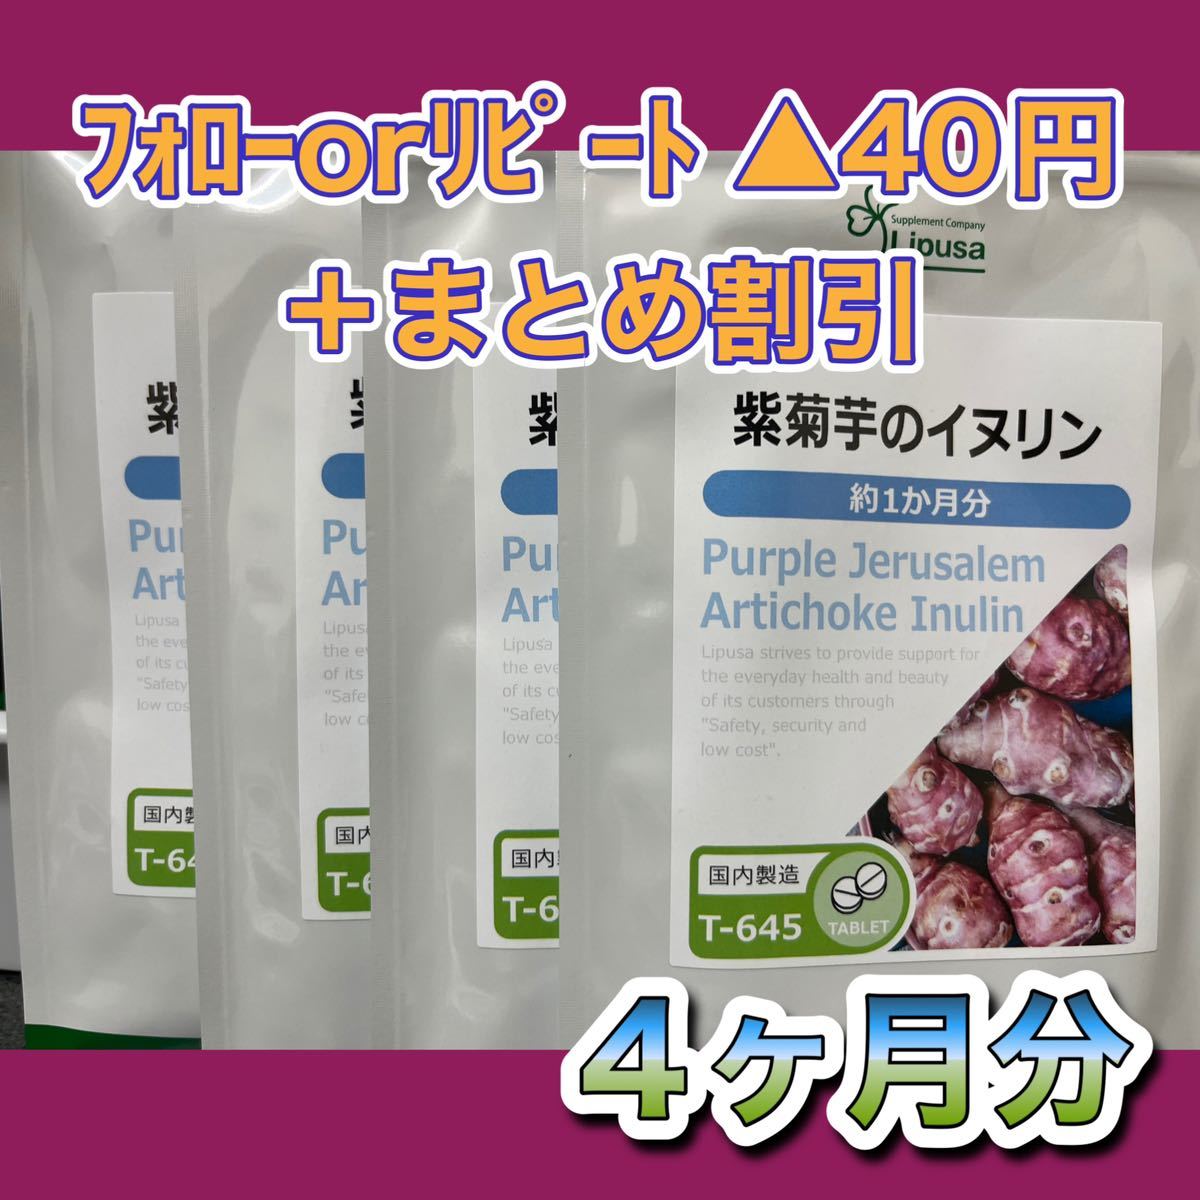  紫菊芋のイヌリン 約1か月分×3袋 T-645-3 送料無料 ISA リプサ Lipusa サプリ サプリメント フランスキクイモ 食物繊維 約3か月分